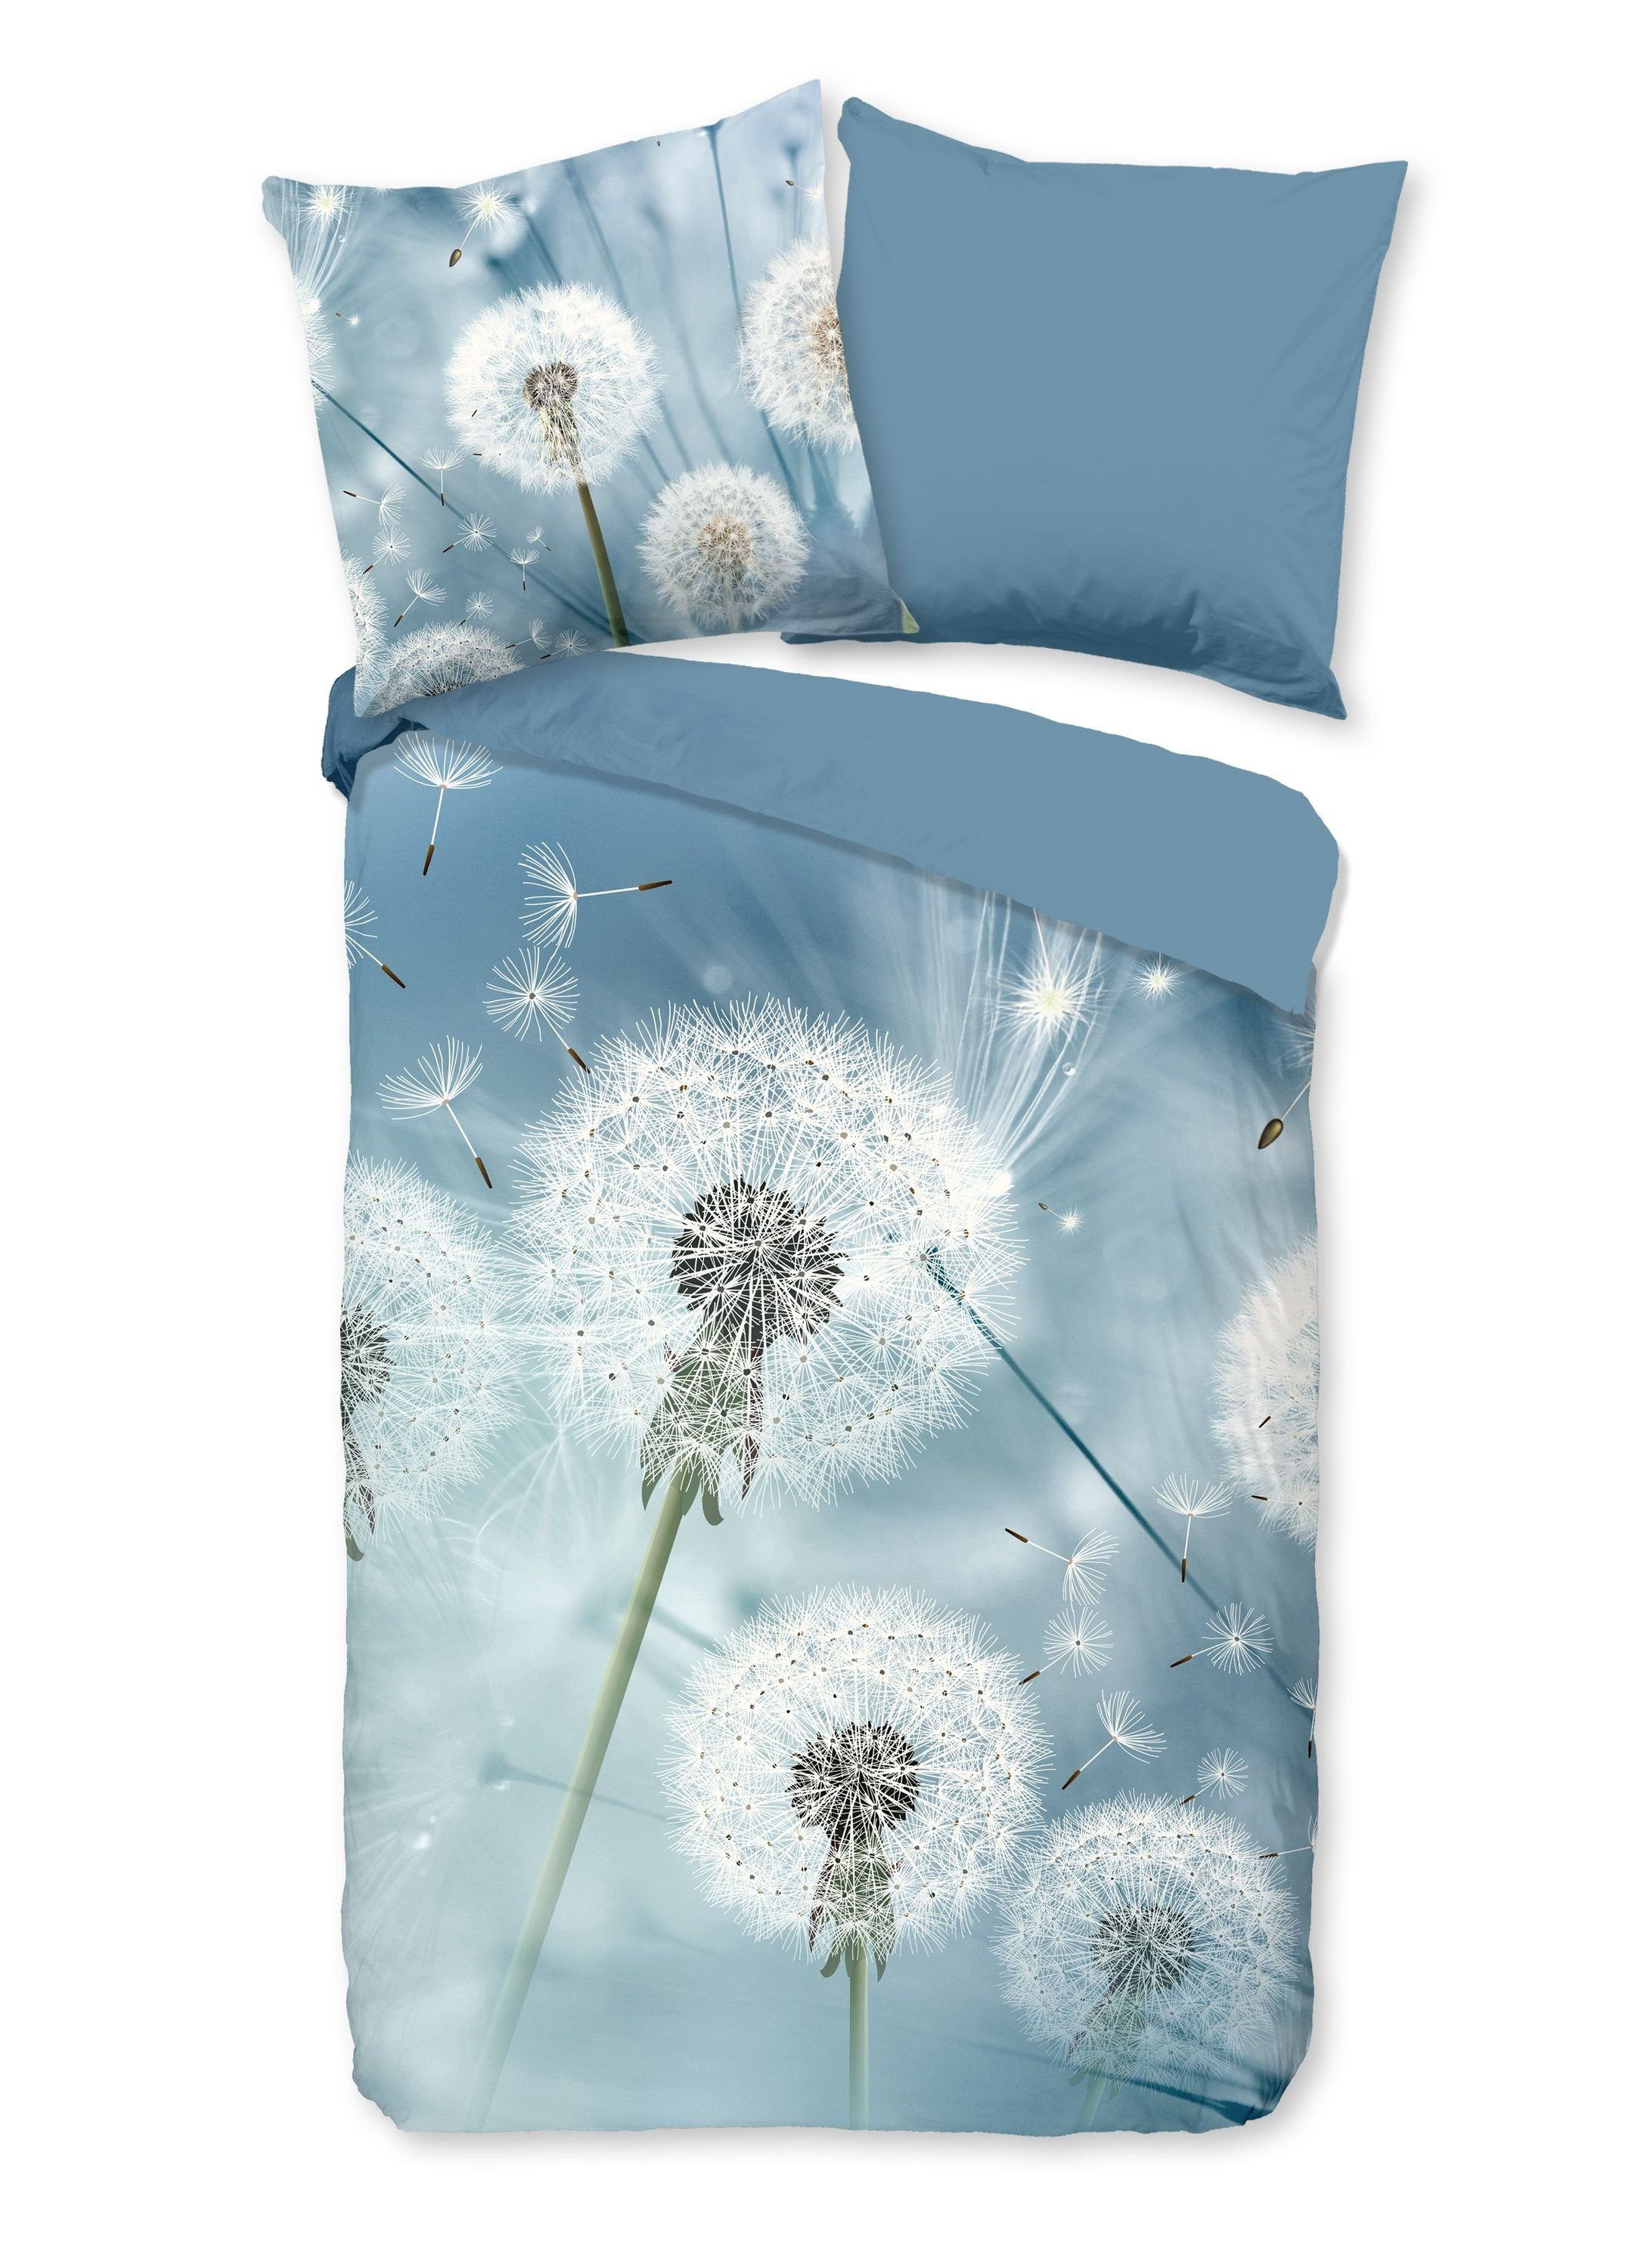 Bettwäsche Baumwolle, Traumschloss, Renforcé, 2 teilig, Pusteblumen, blau weiß